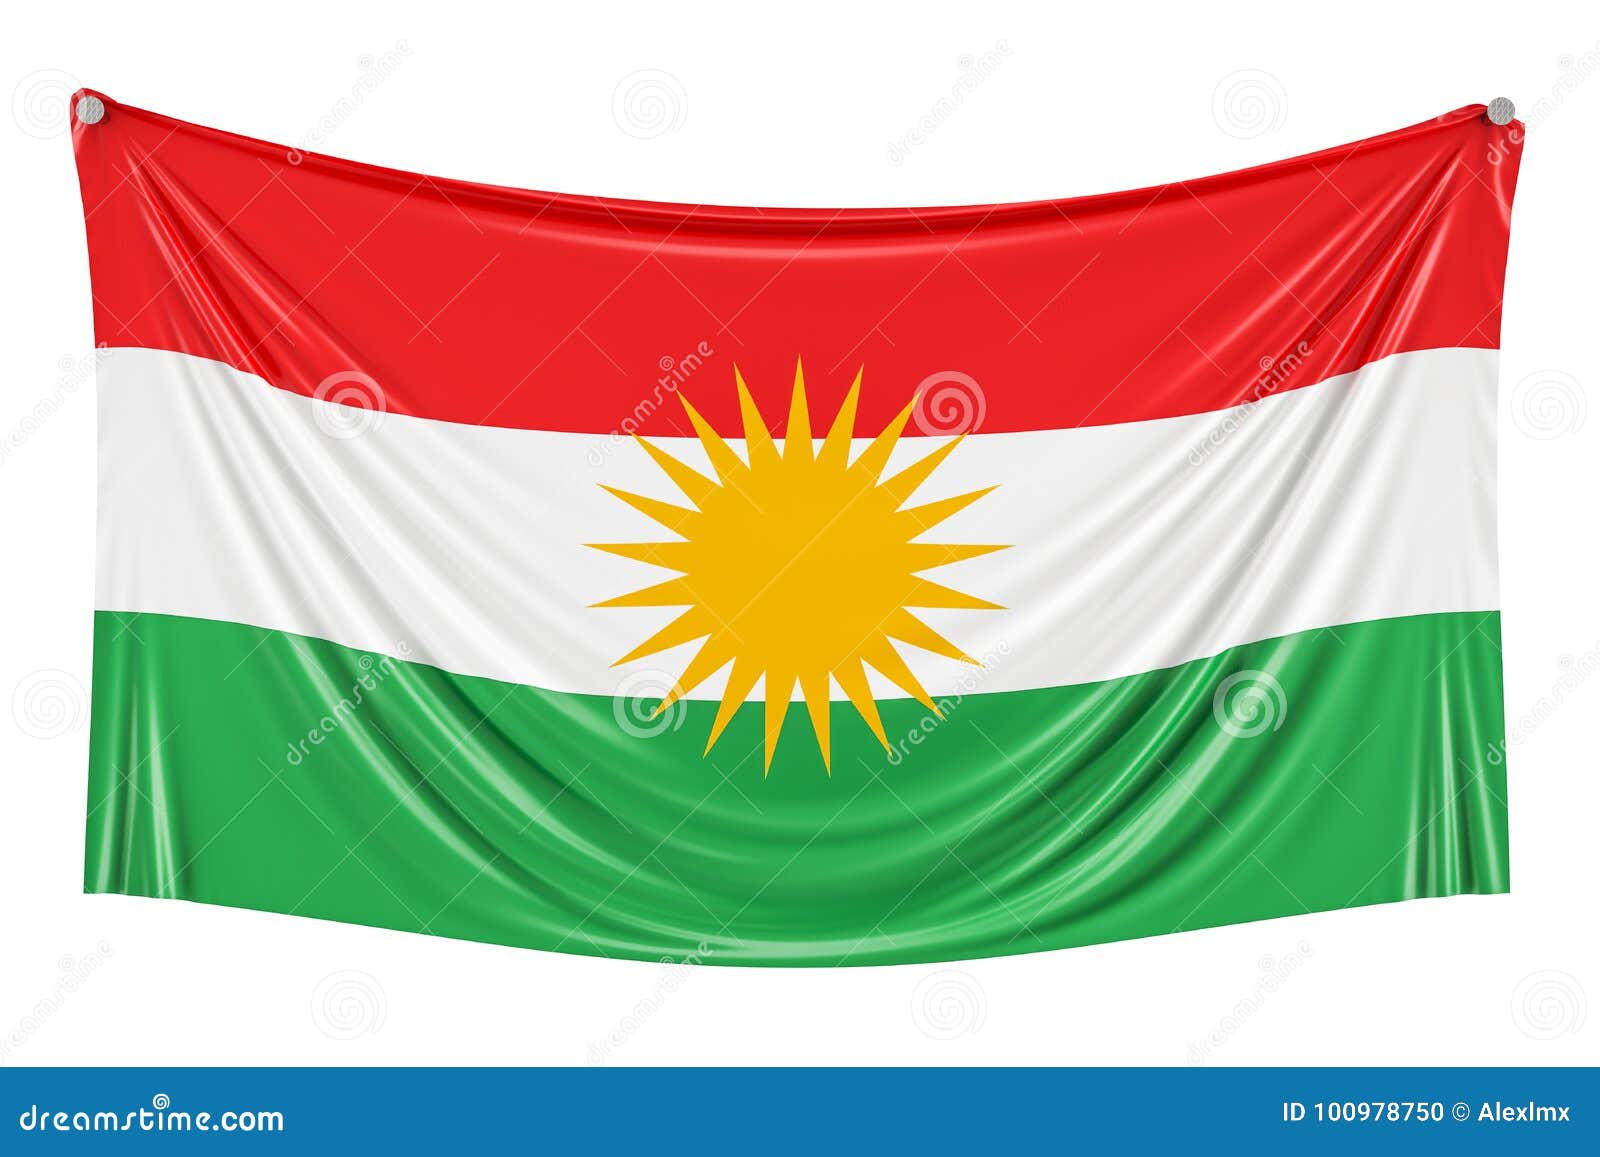 Flag Kurdistan Iraq Painted On Wall Stock Photo 729561193